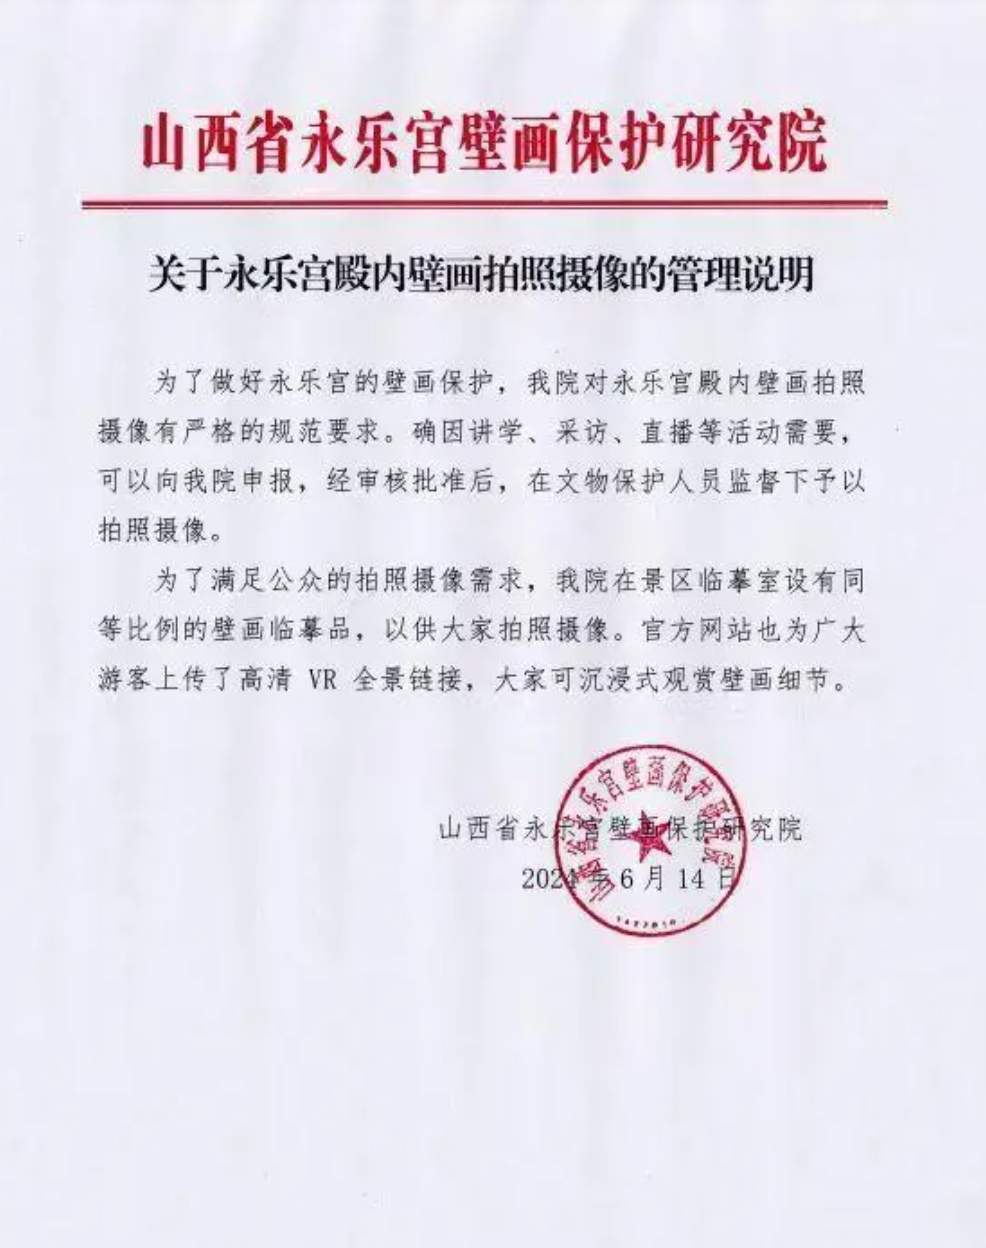 董宇辉在永乐宫拍摄壁画引质疑，官方明确了拍照摄像的相关规定